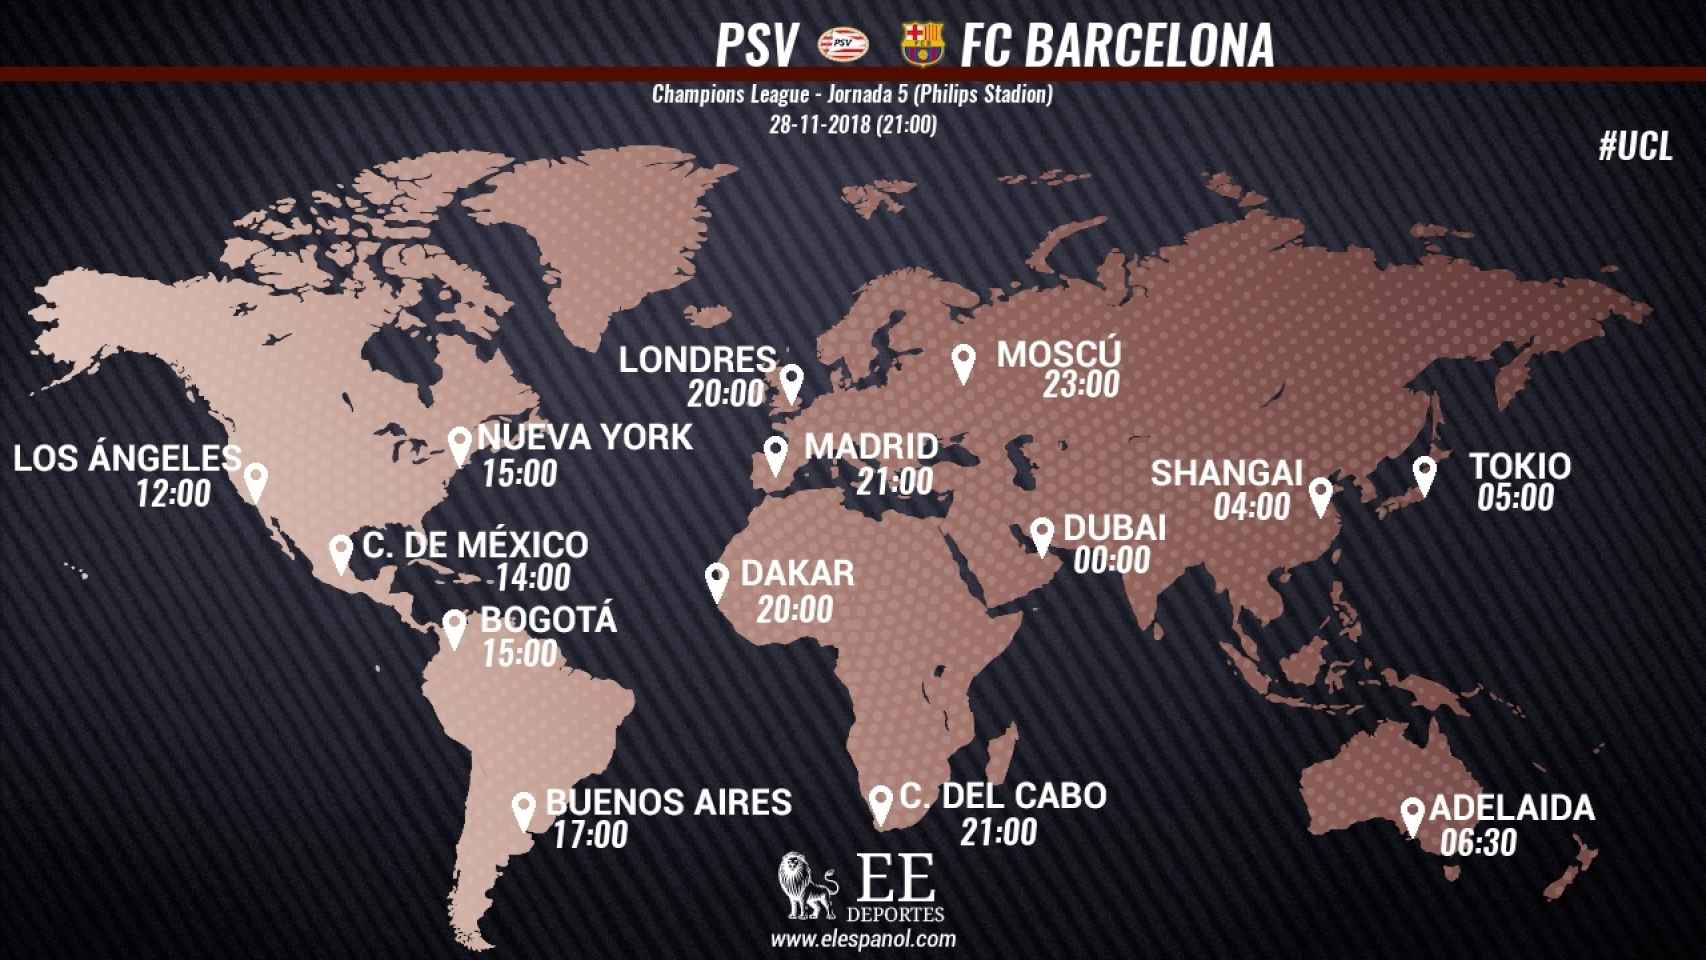 Horario internacional del PSV - Barcelona.